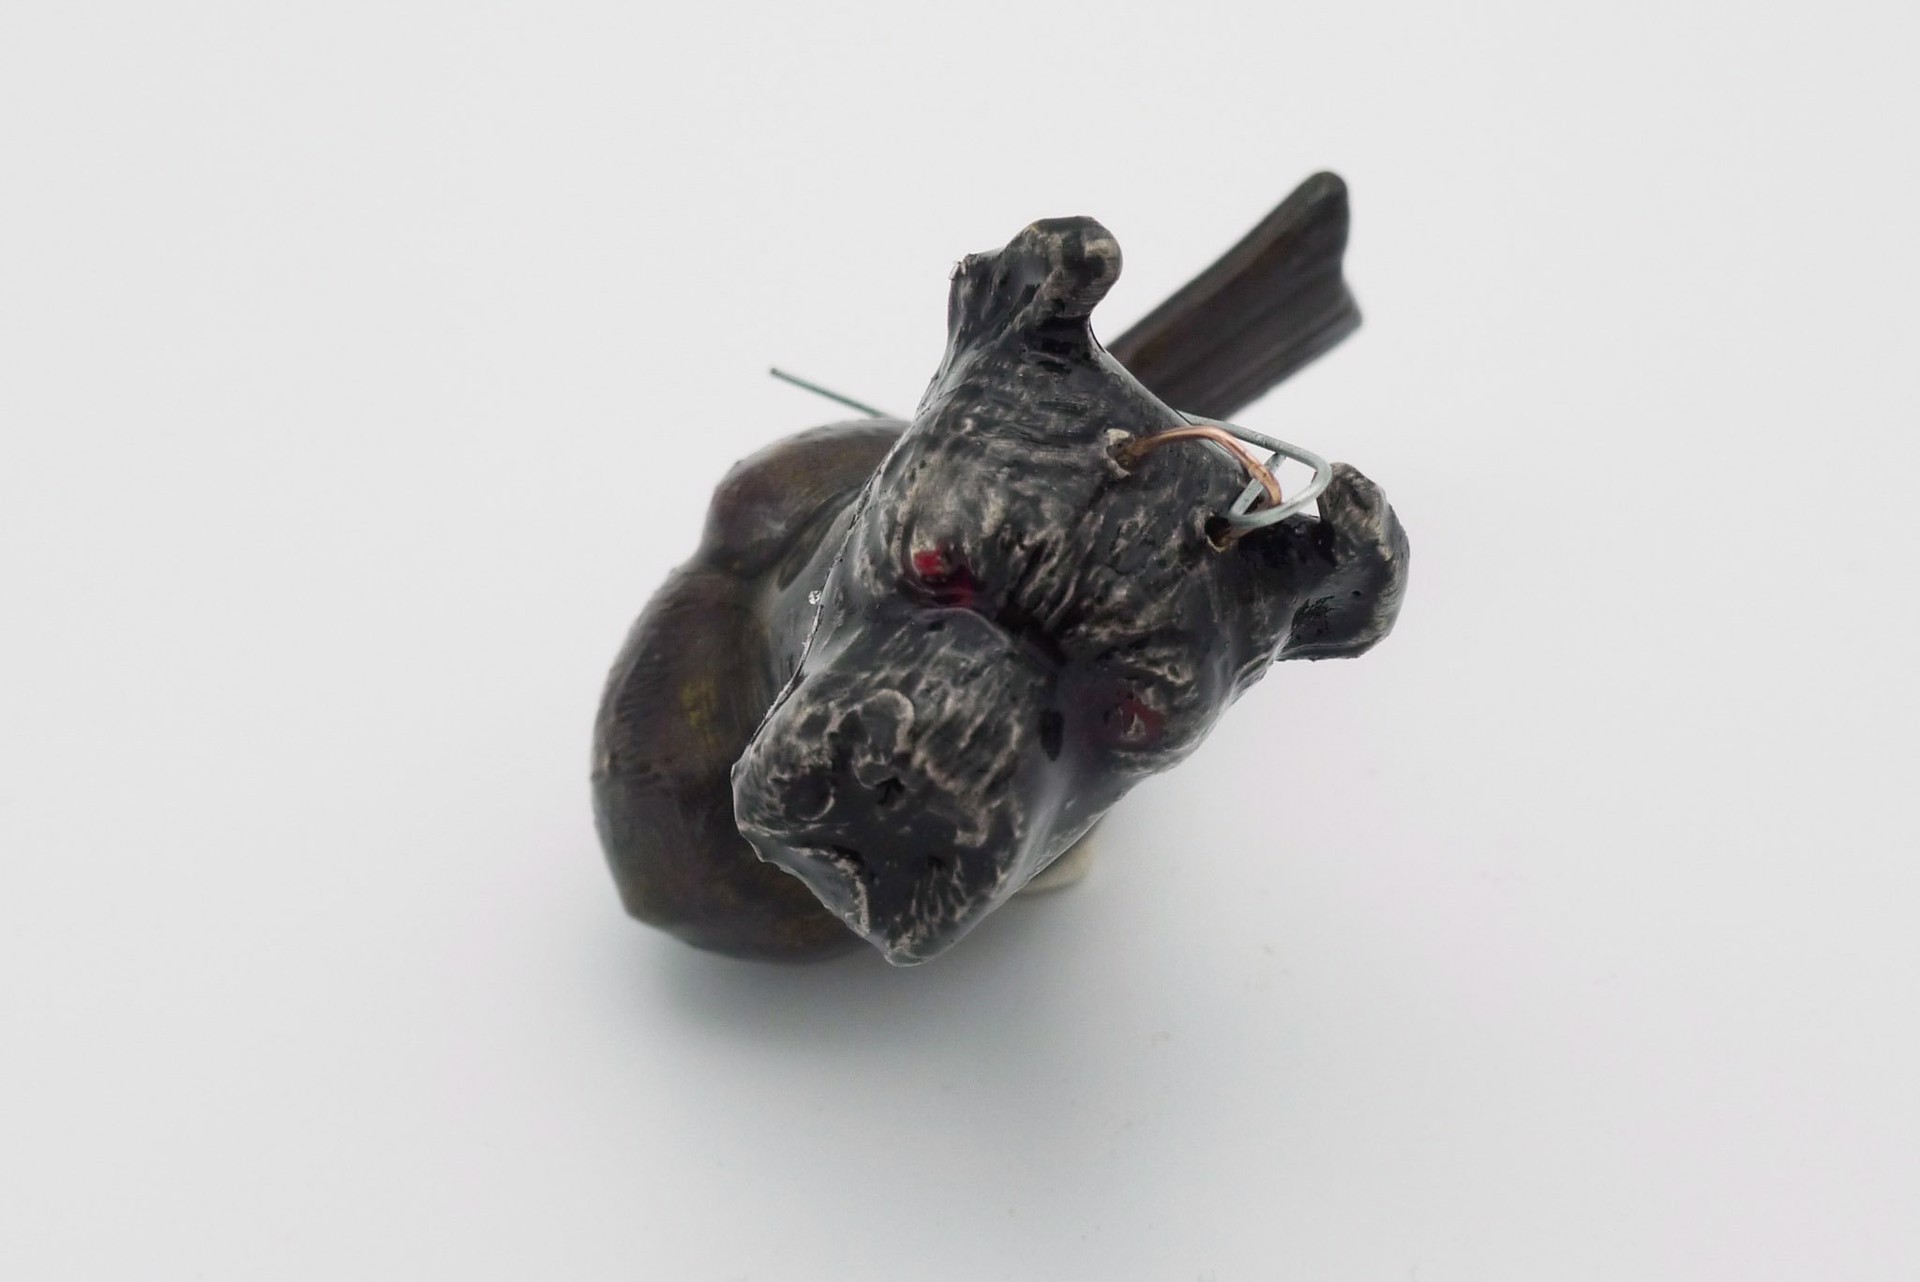 Dog Head Bird Ornament by Craig Clifford